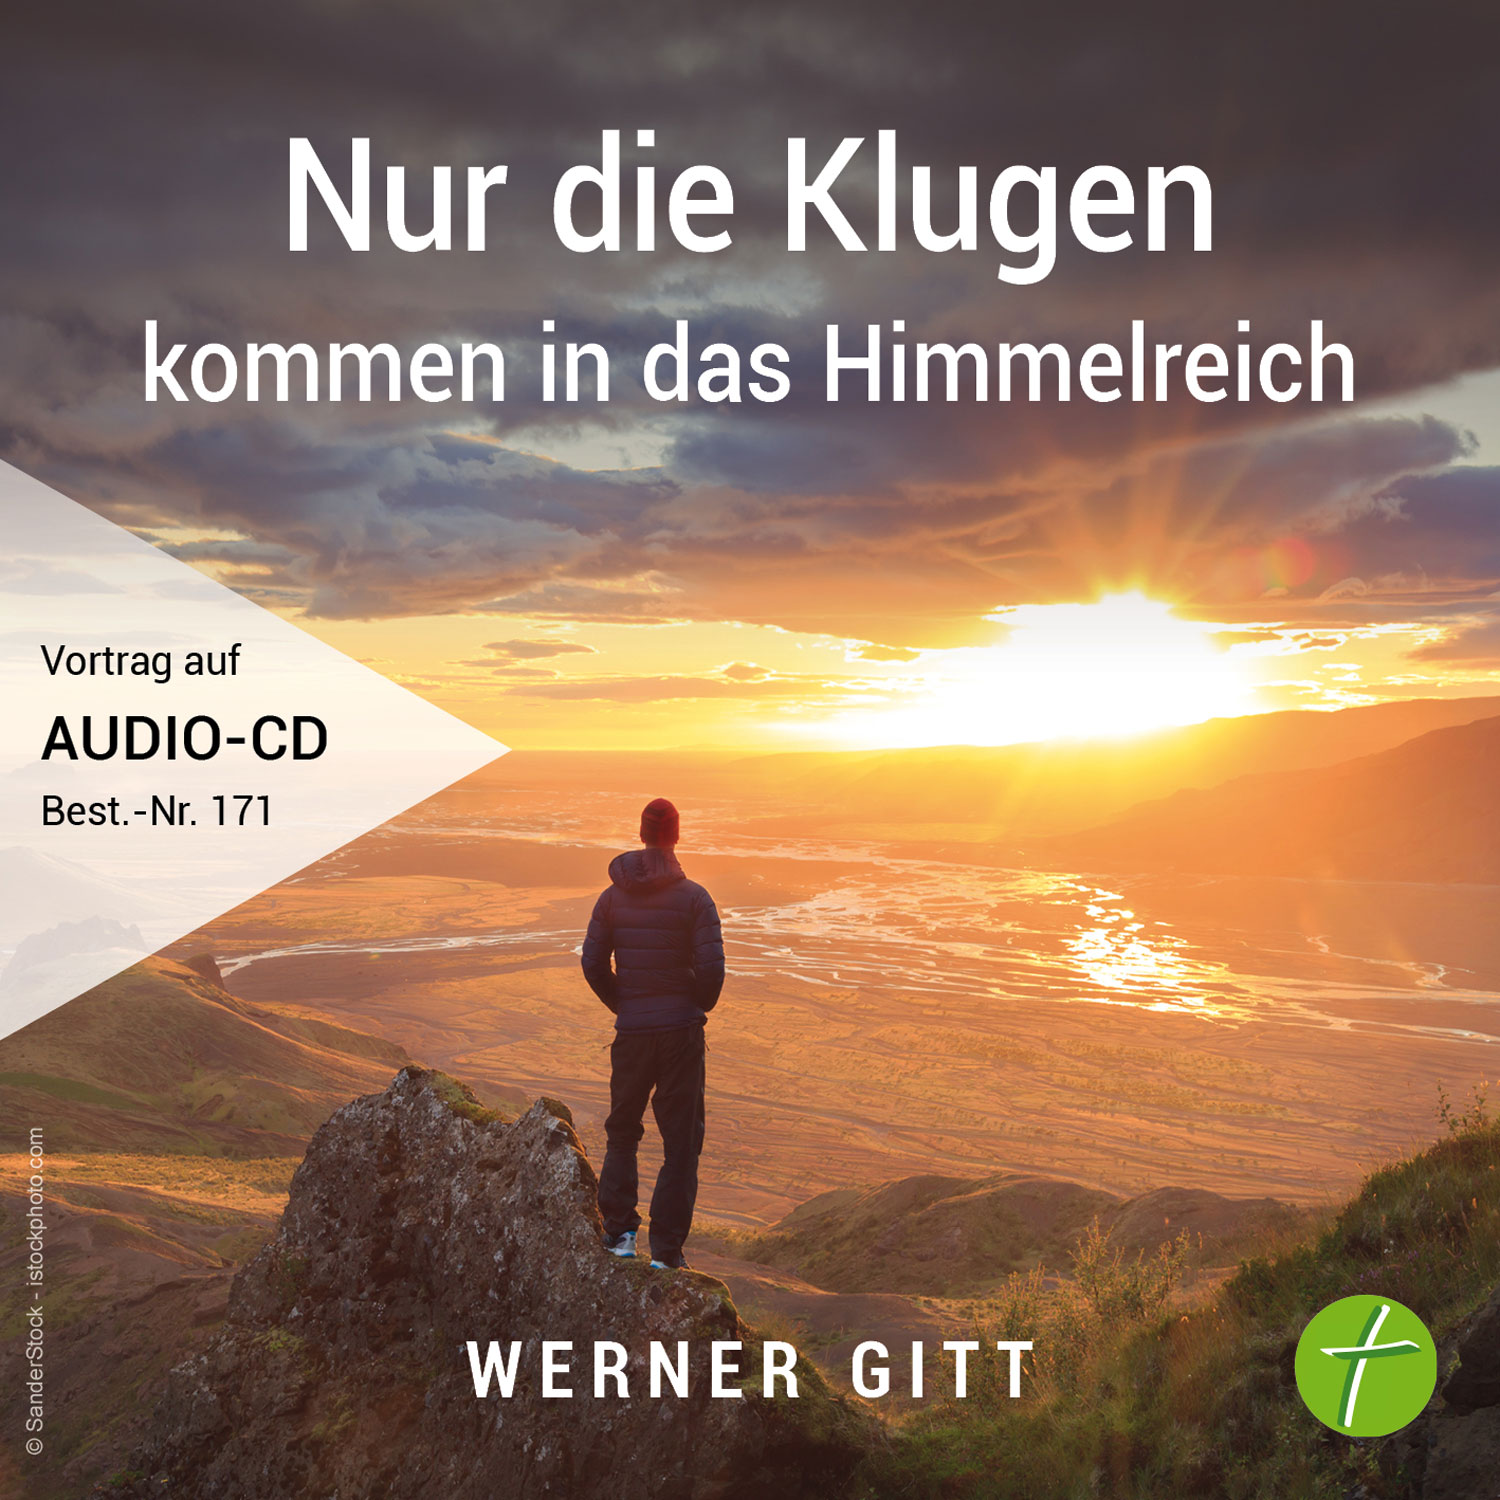 Nur die Klugen kommen in das Himmelreich (Audio-CD)